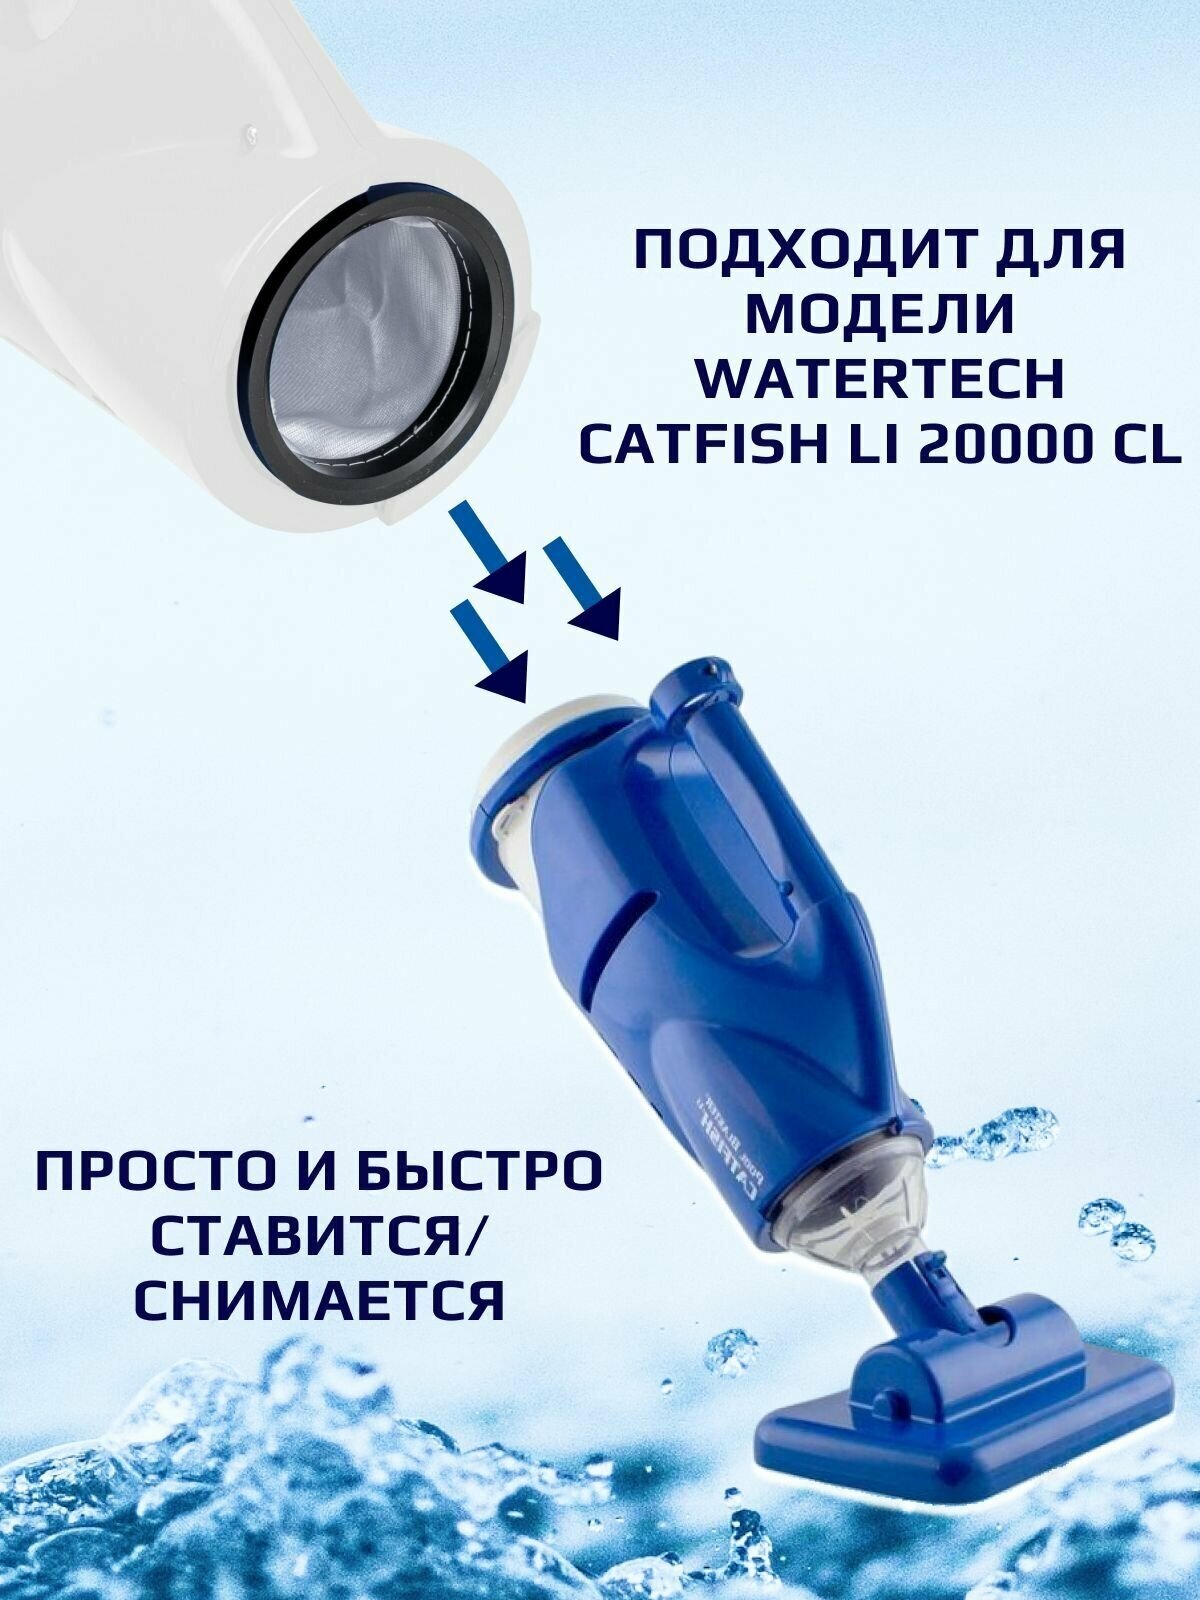 Фильтр-мешок универсальный для пылесоса для бассейна Catfish Li 20000CL - фотография № 2